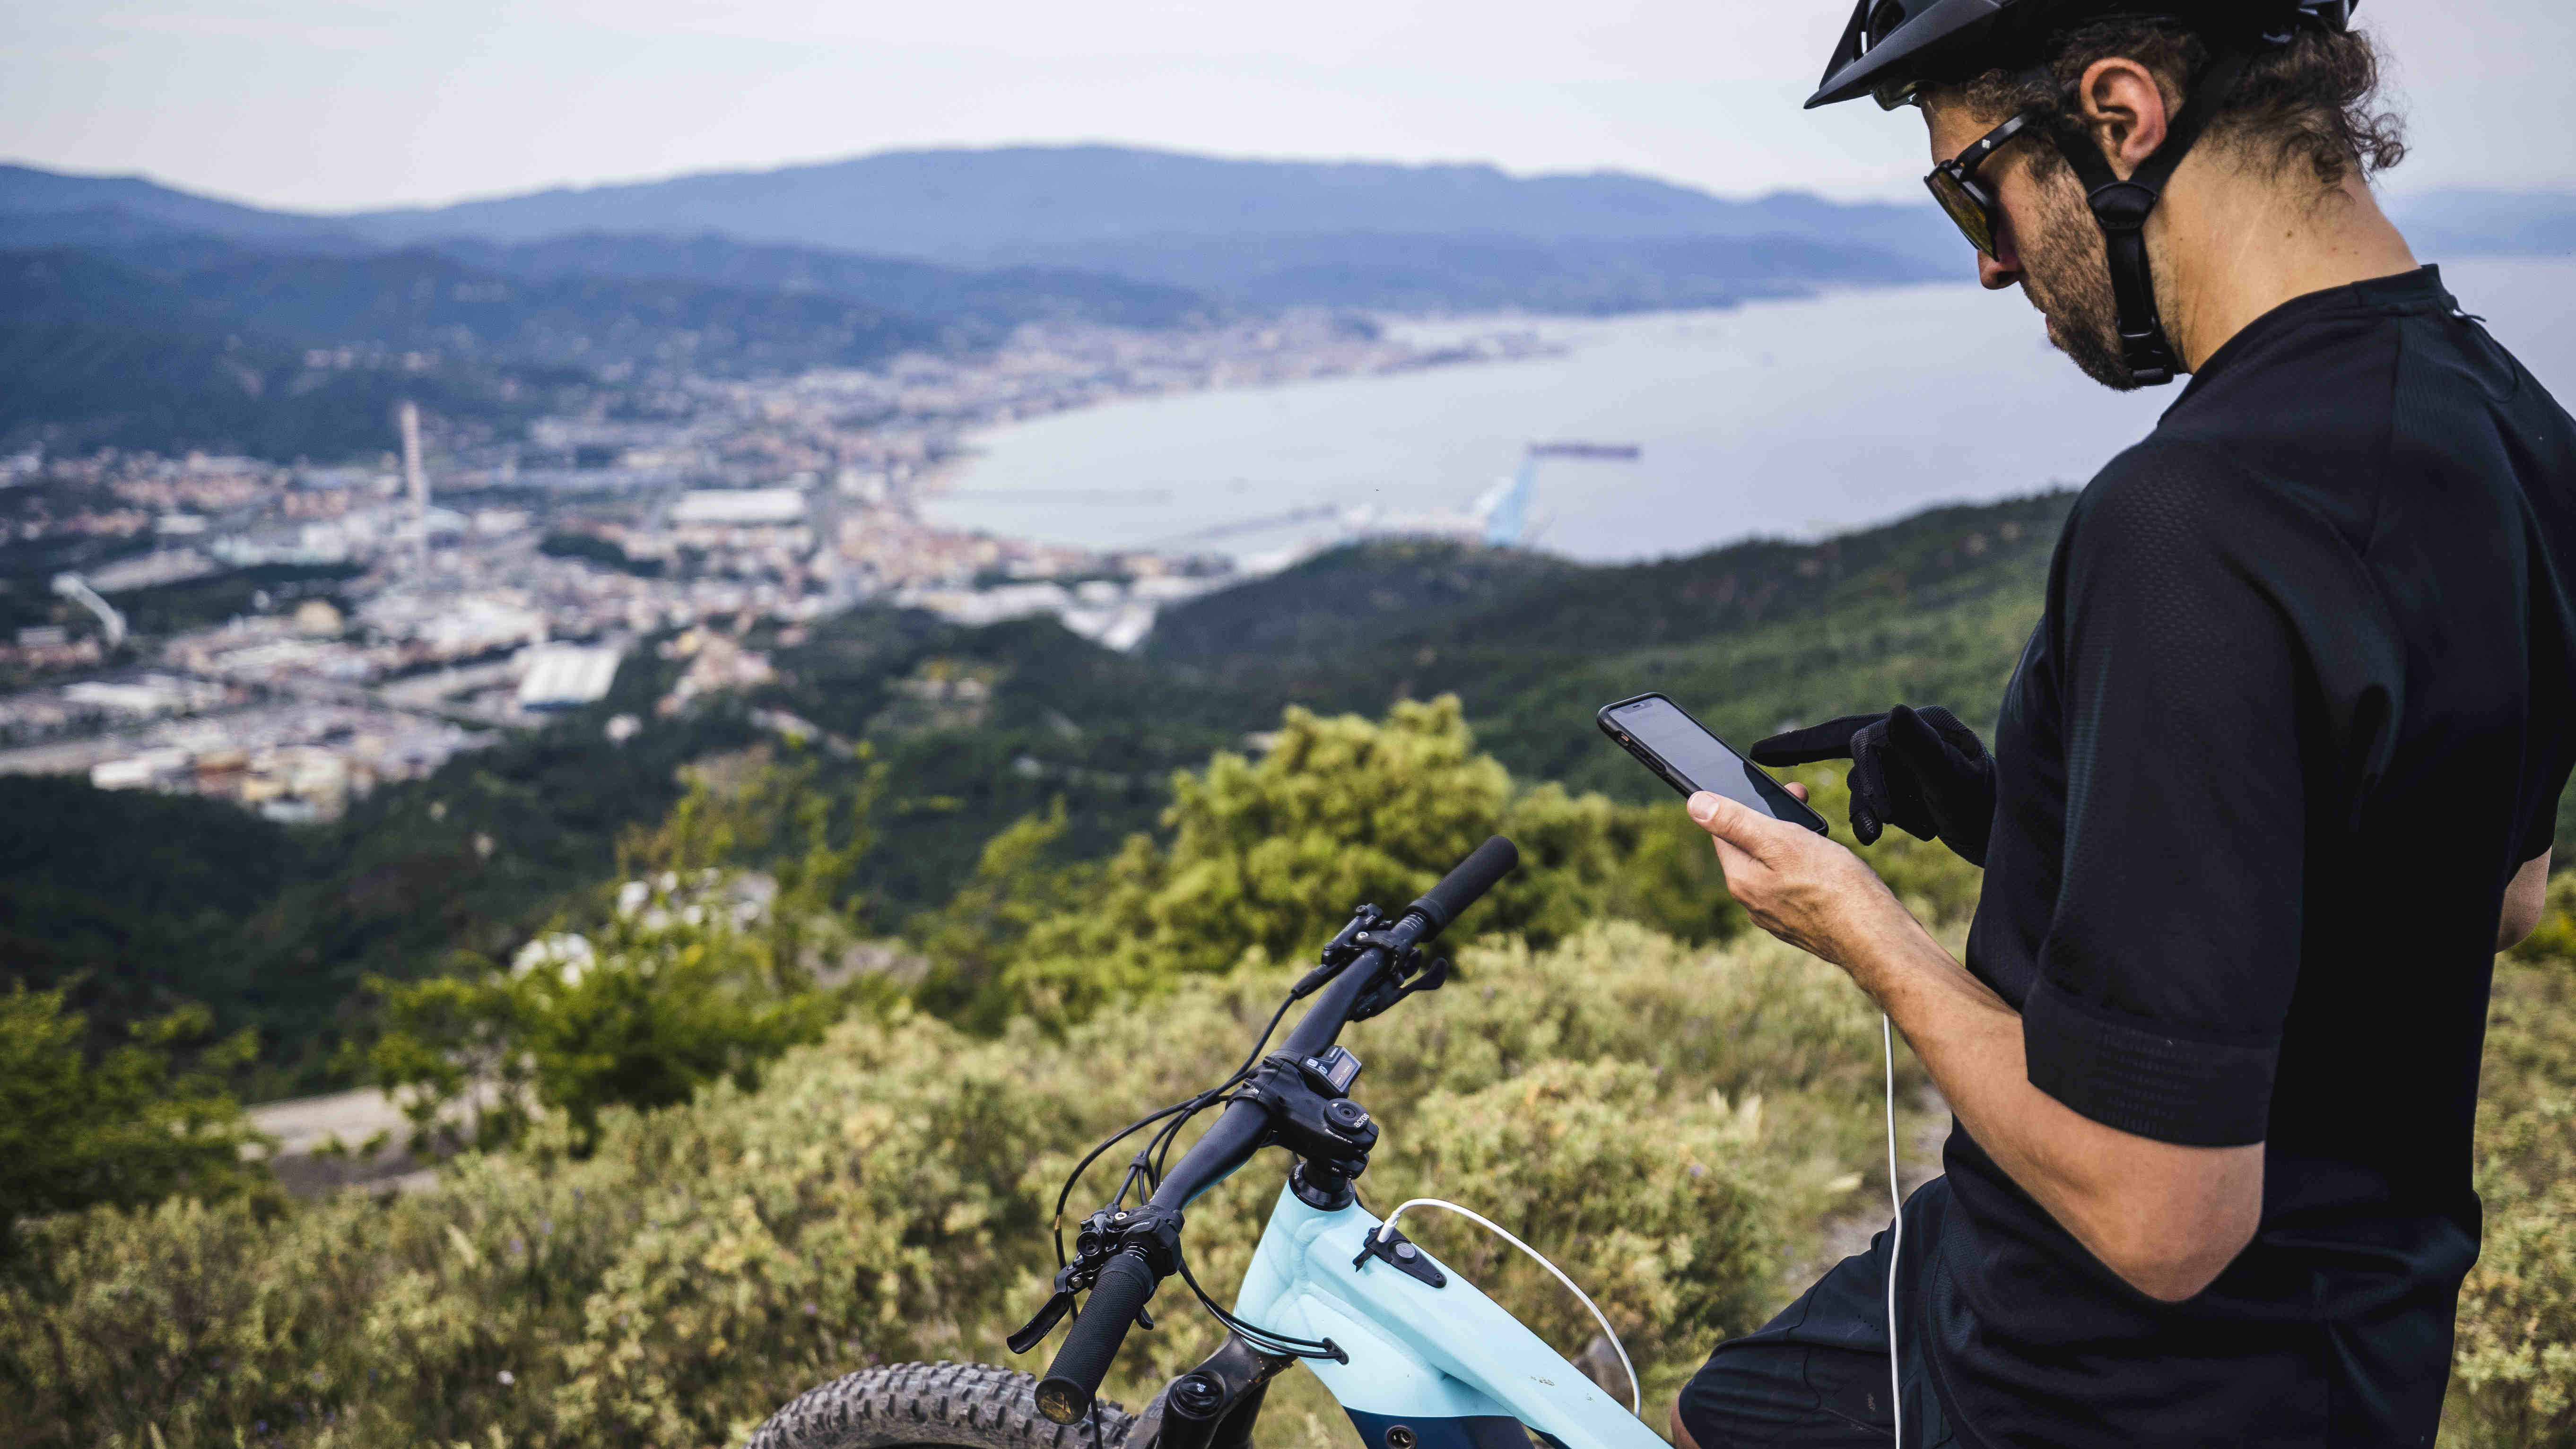 Où trouver des cartes topo Garmin gratuites adaptées au vélo